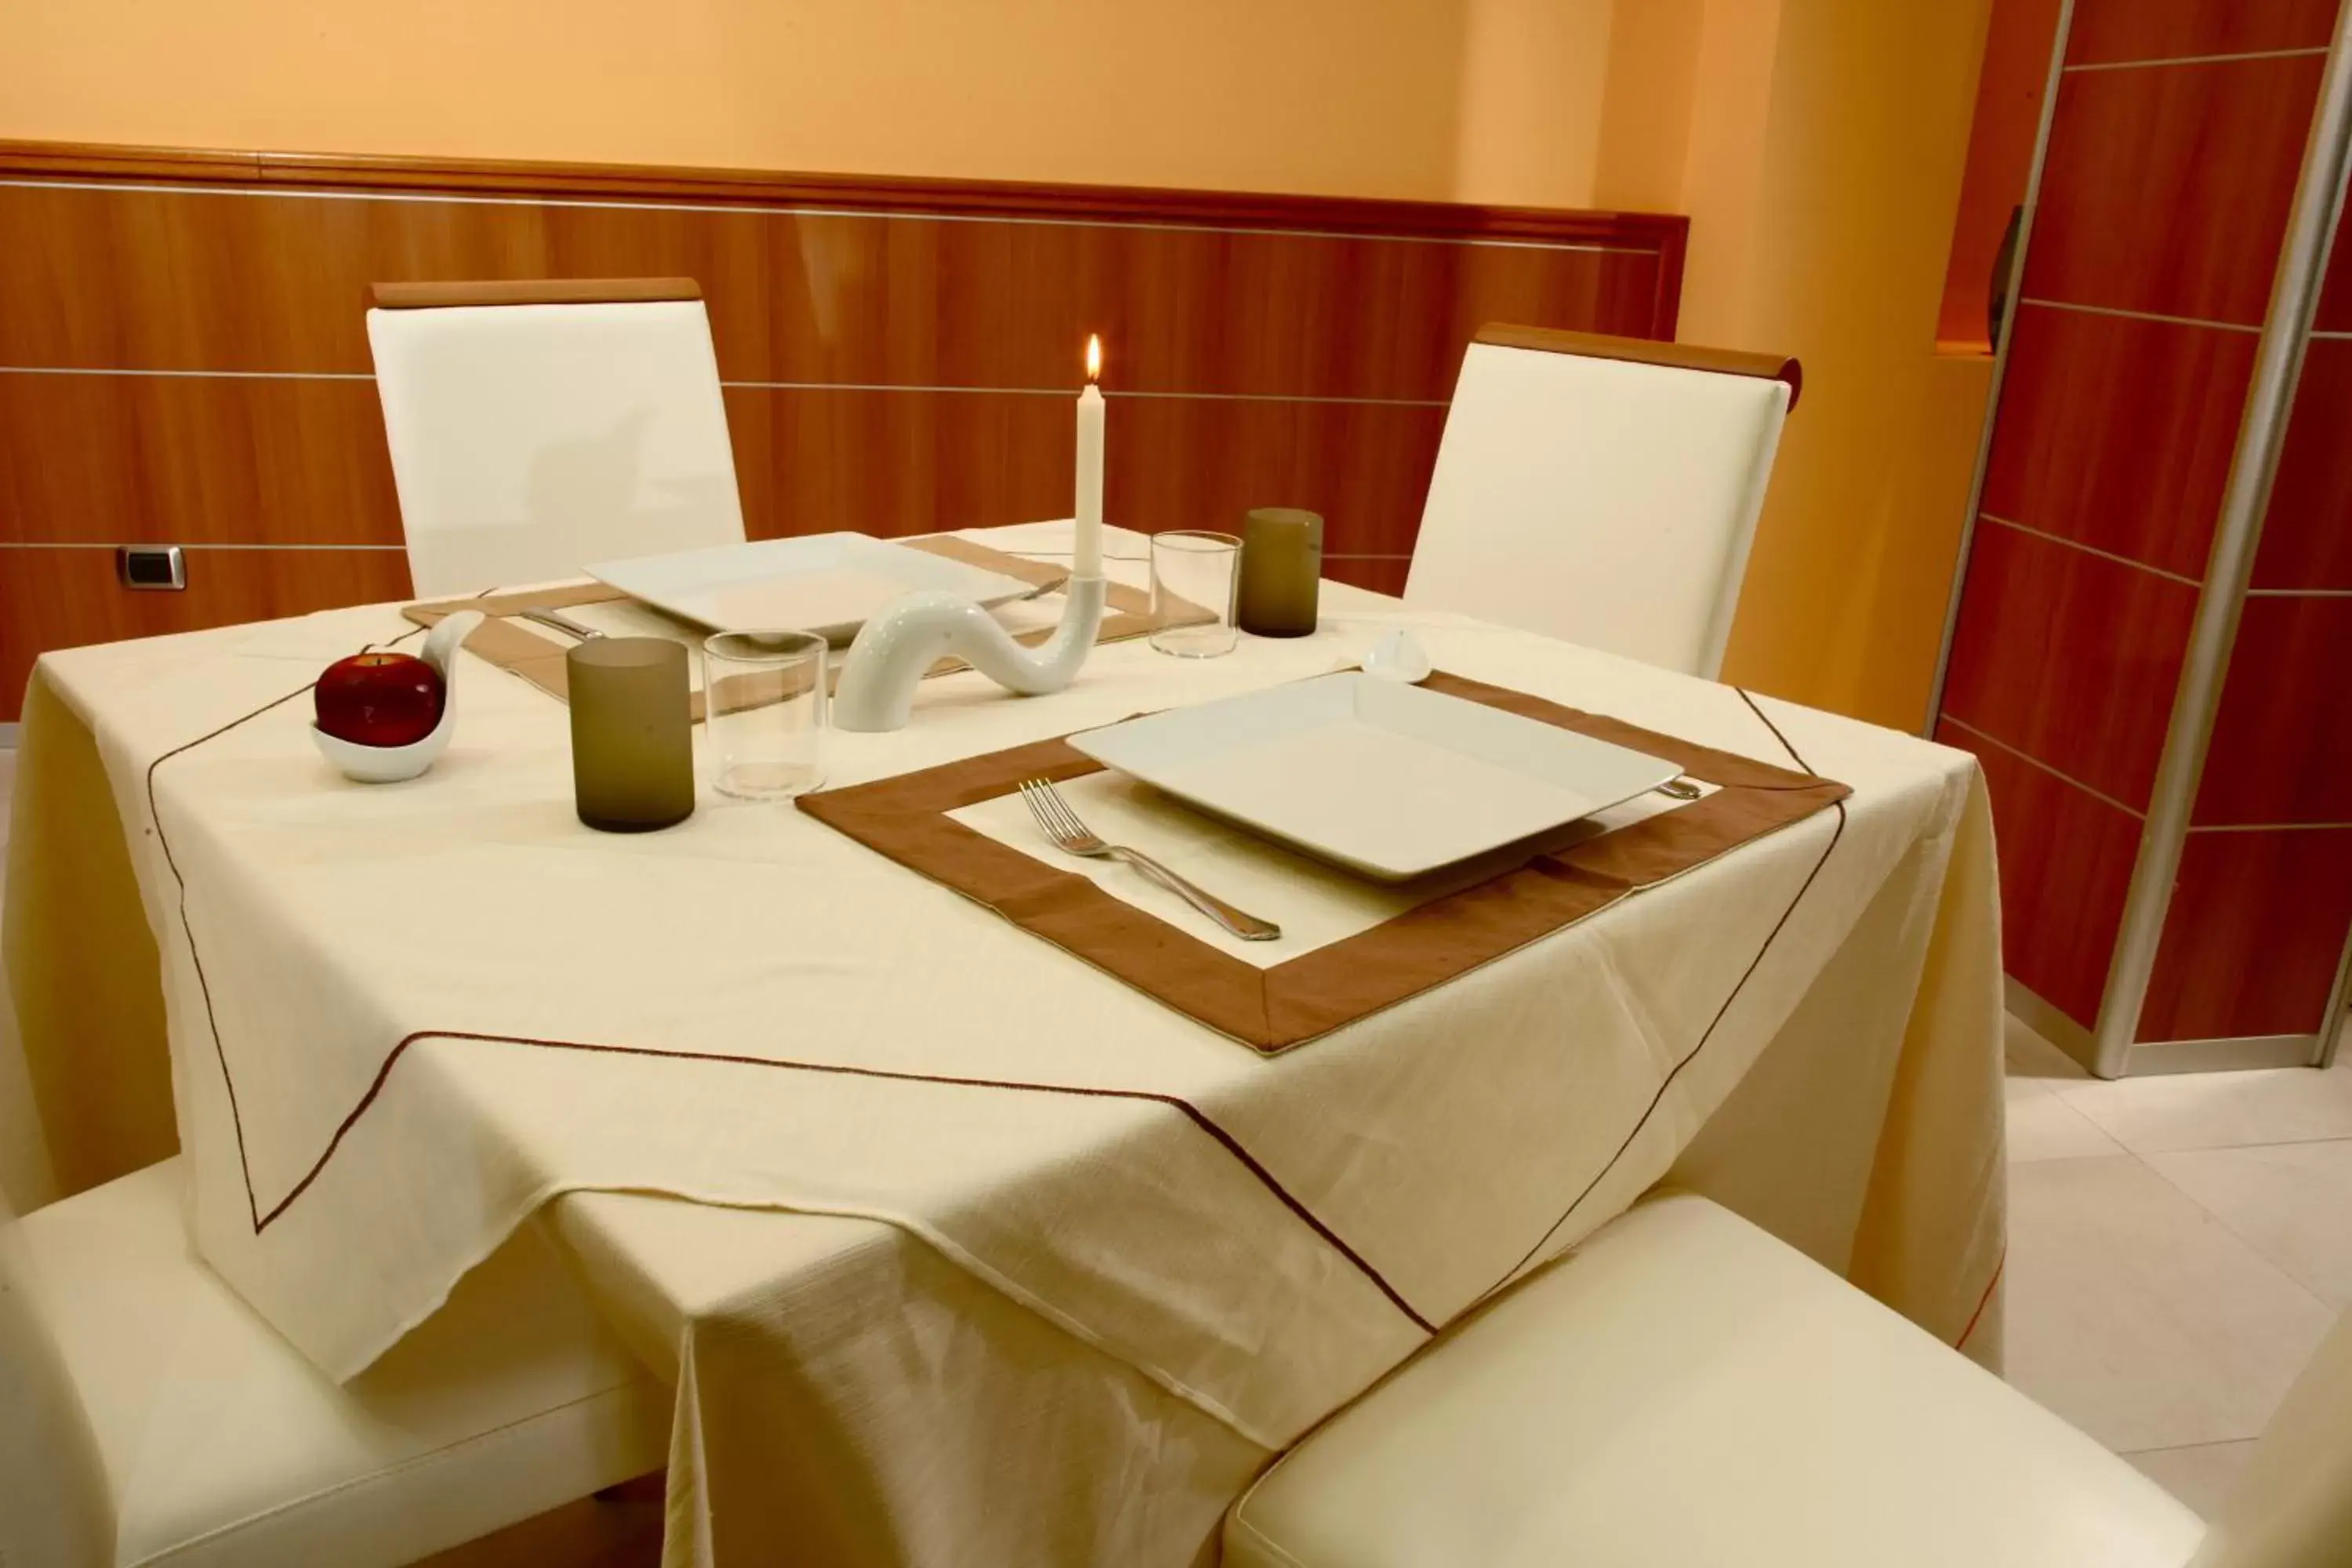 Restaurant/places to eat in Hotel Futura Centro Congressi